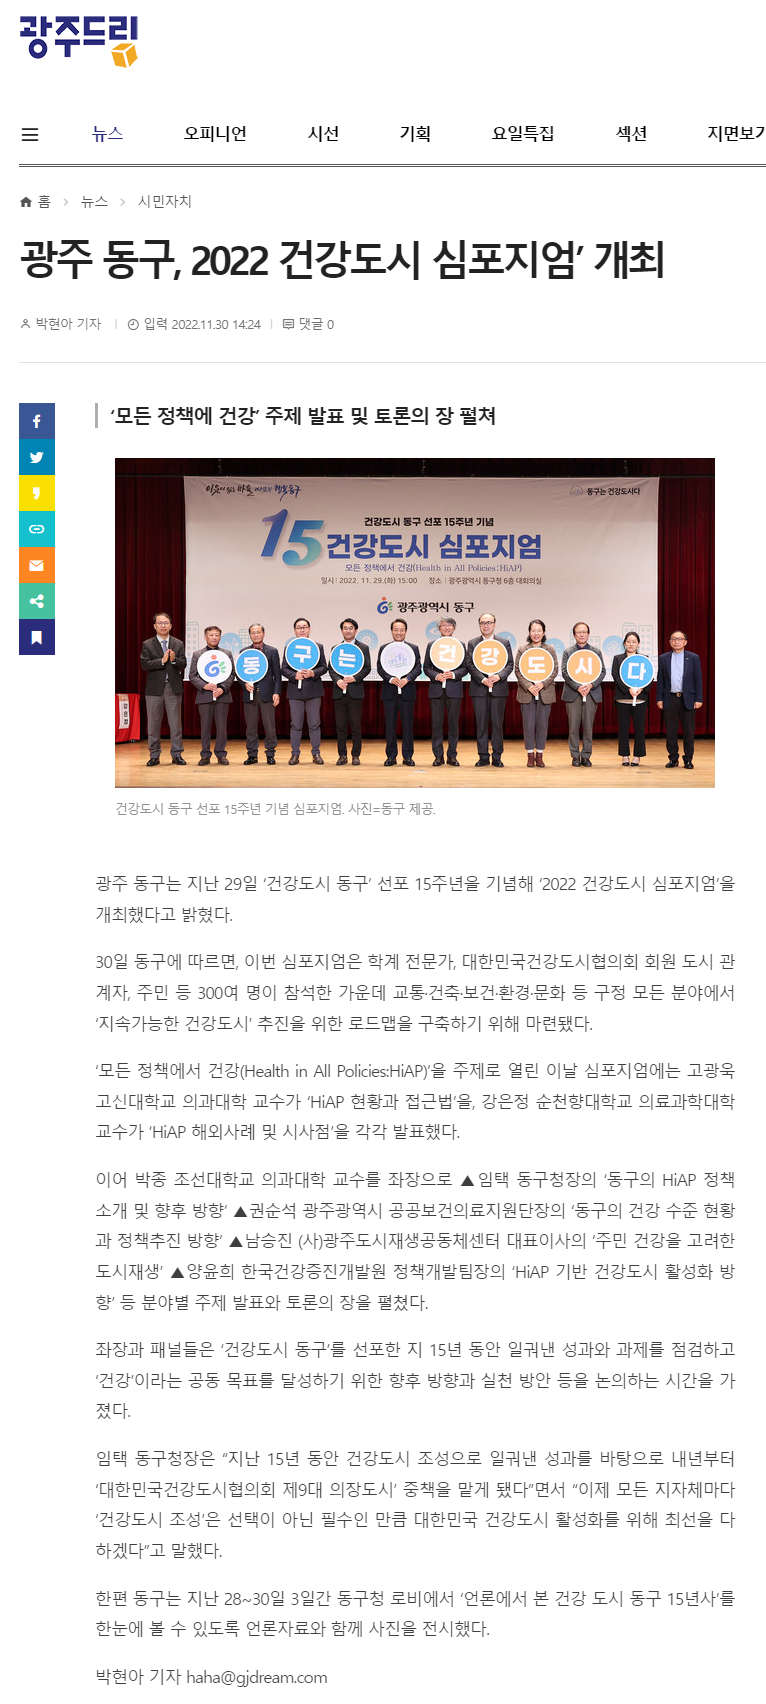 광주 동구, '2022 건강도시 심포지엄' 개최